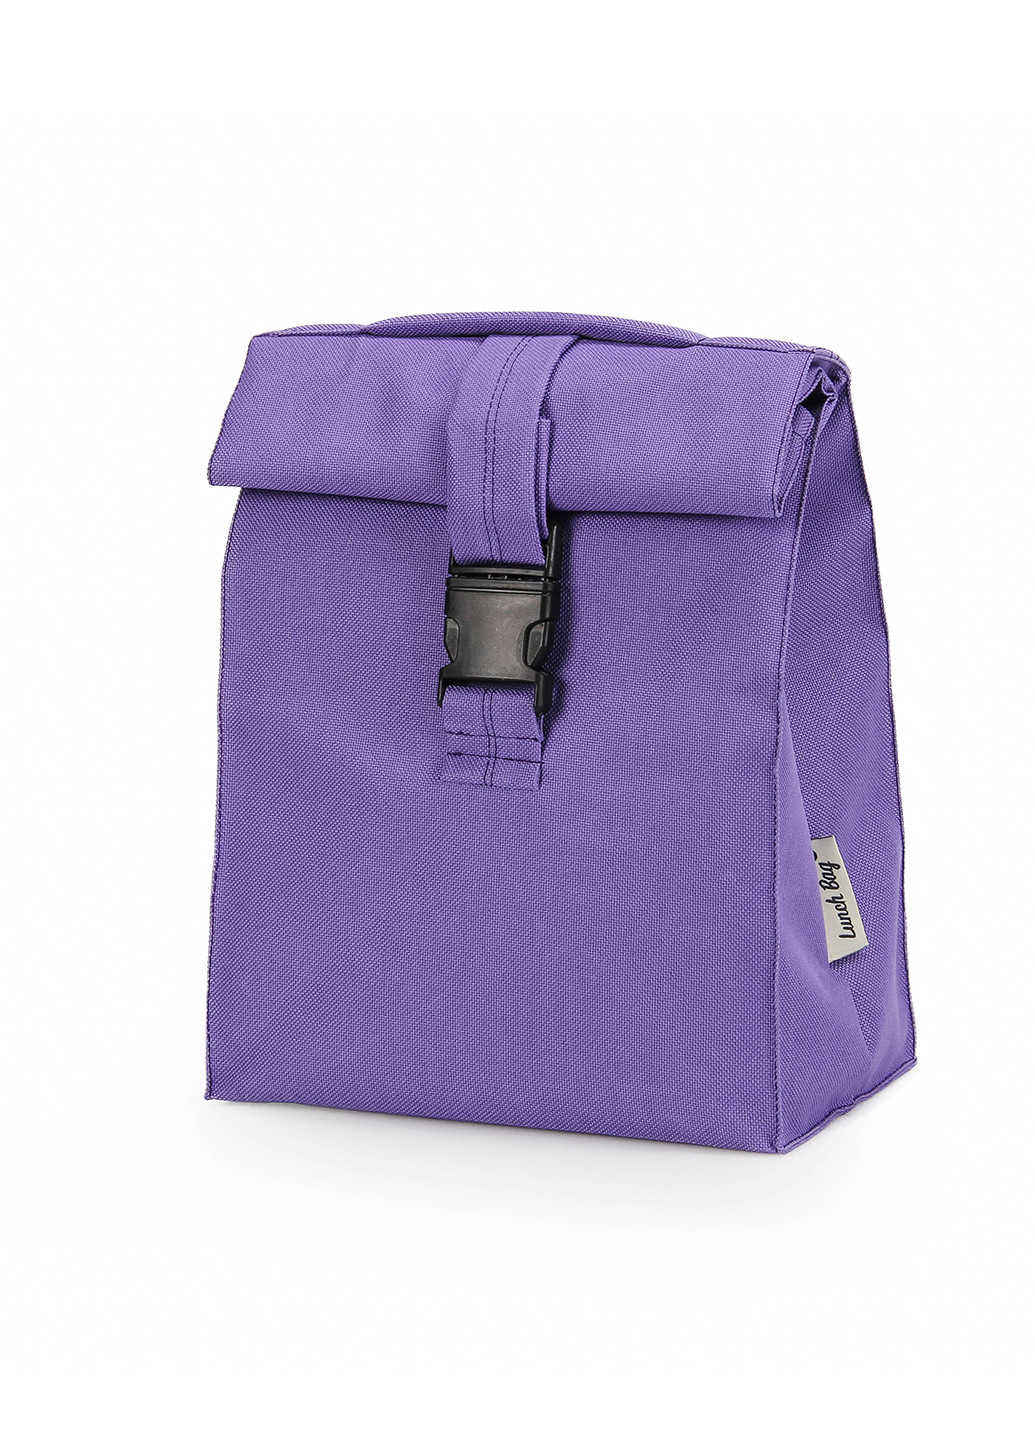 Термосумка ланч бэг М фиолетовая Lunch bag UA m (232265100)